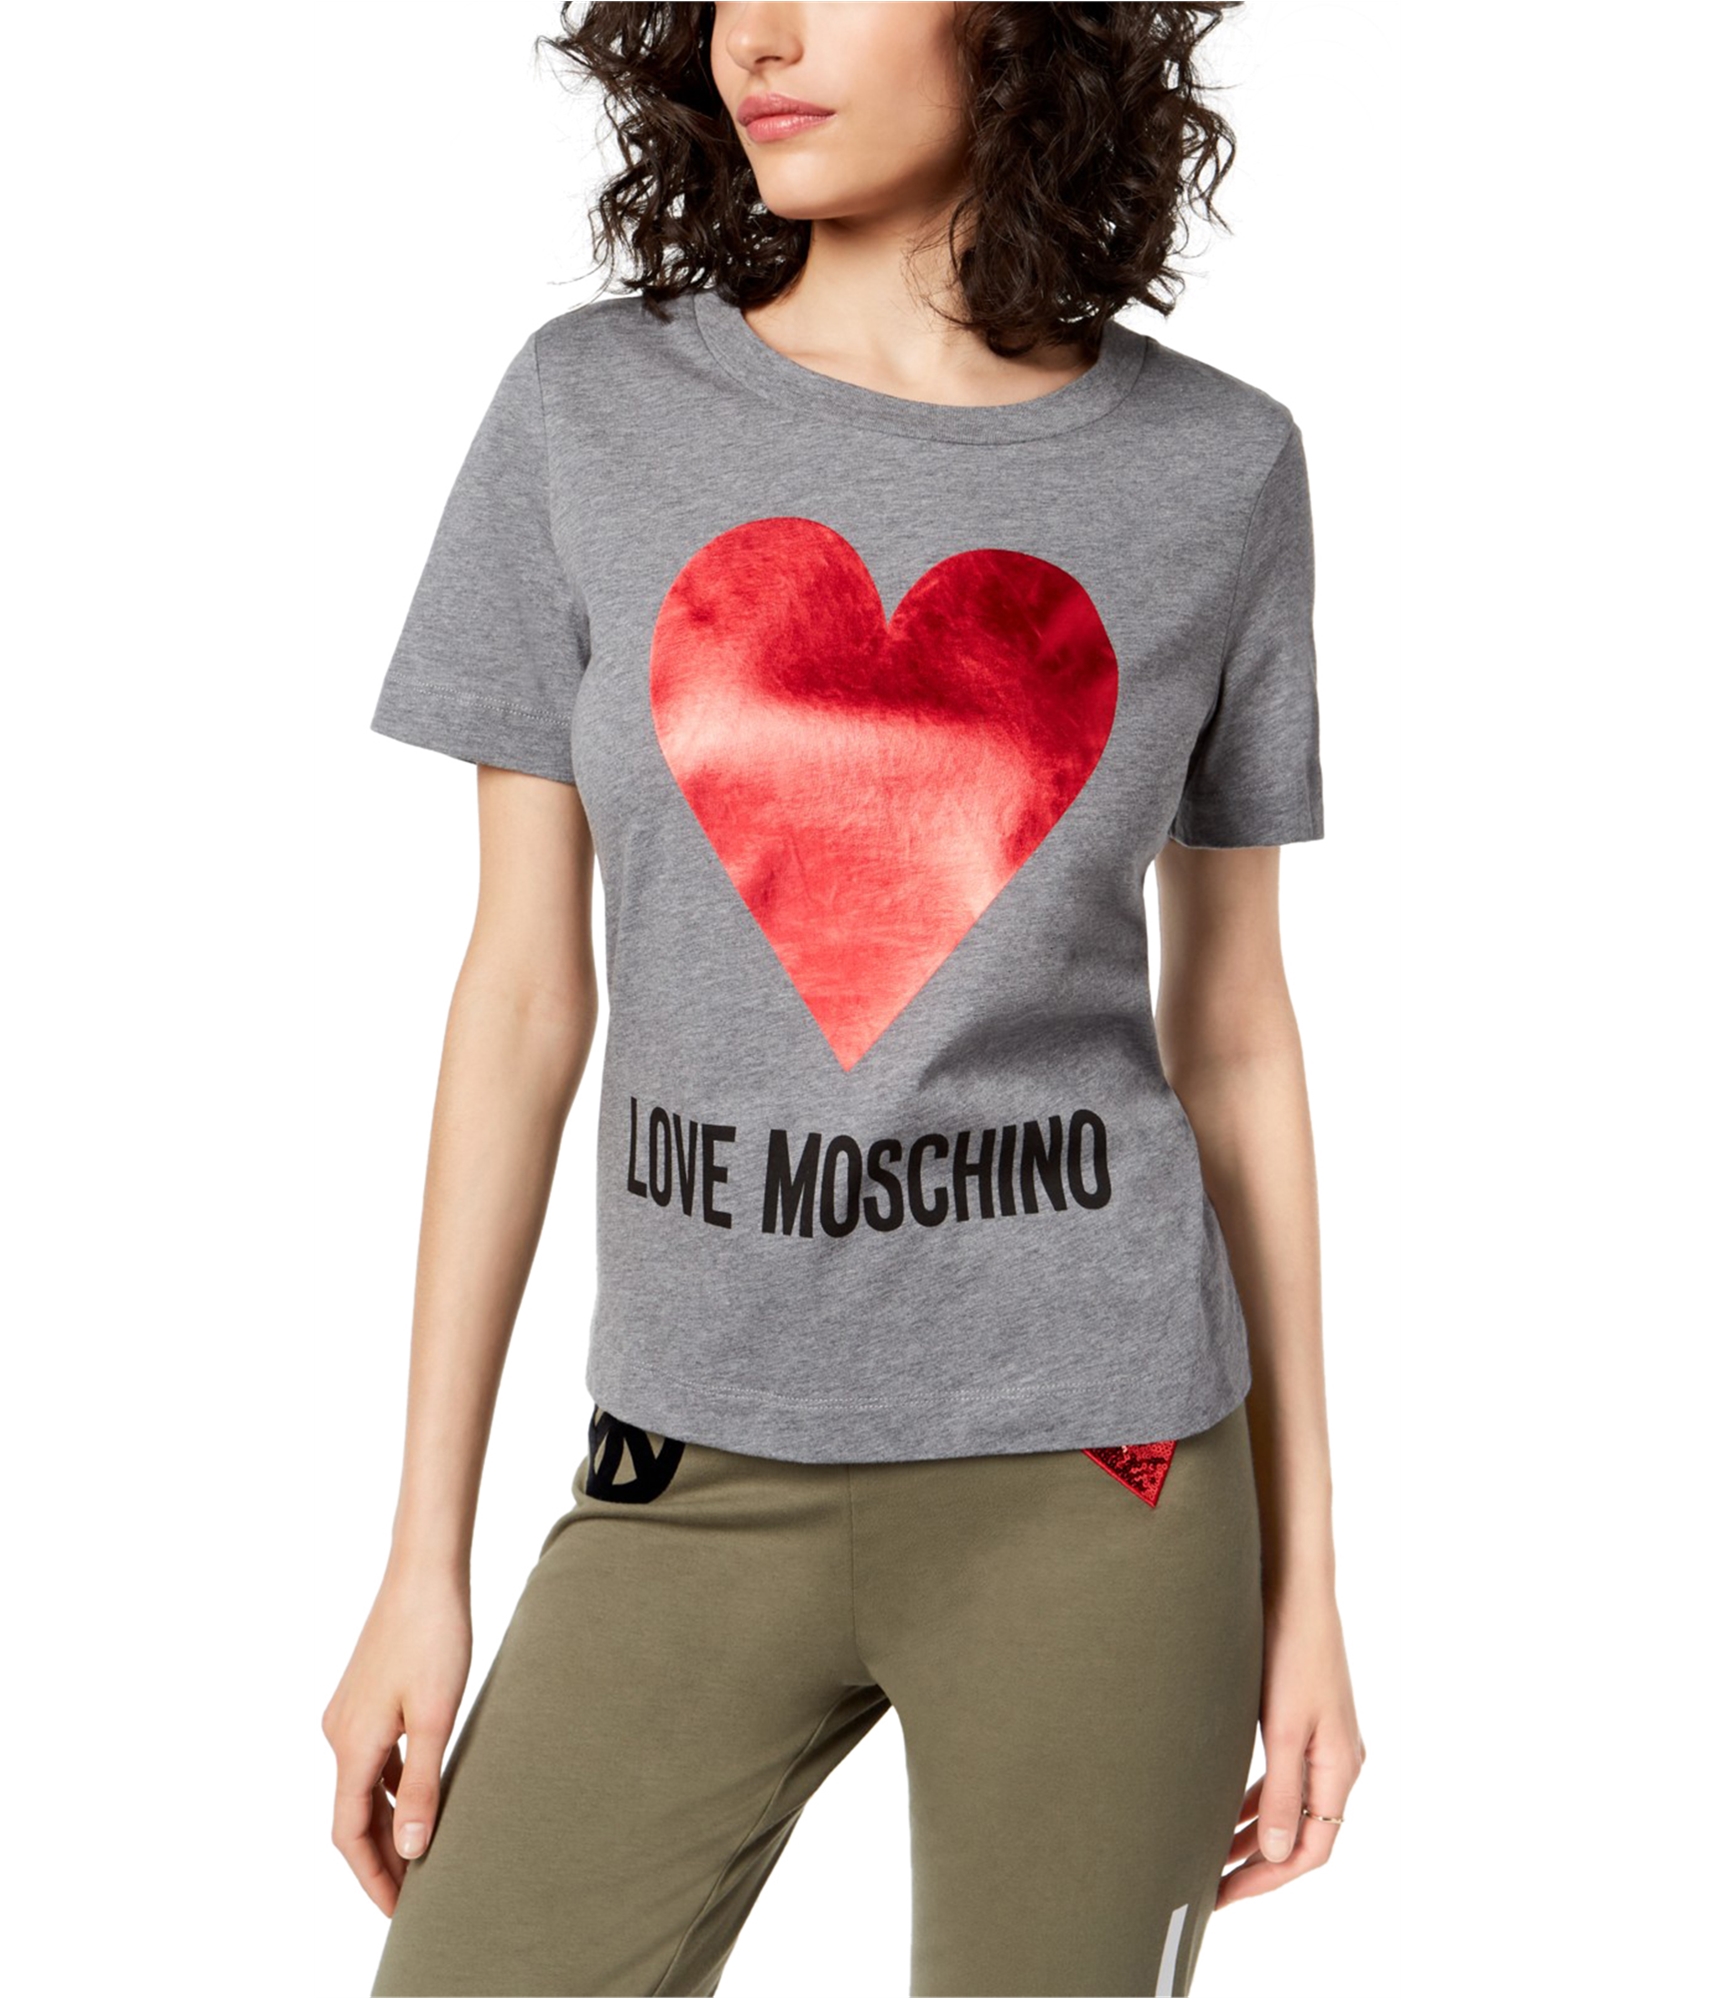 Moschino Womens Red Heart Graphic T-Shirt, Grey, 10 8050326133991 | eBay